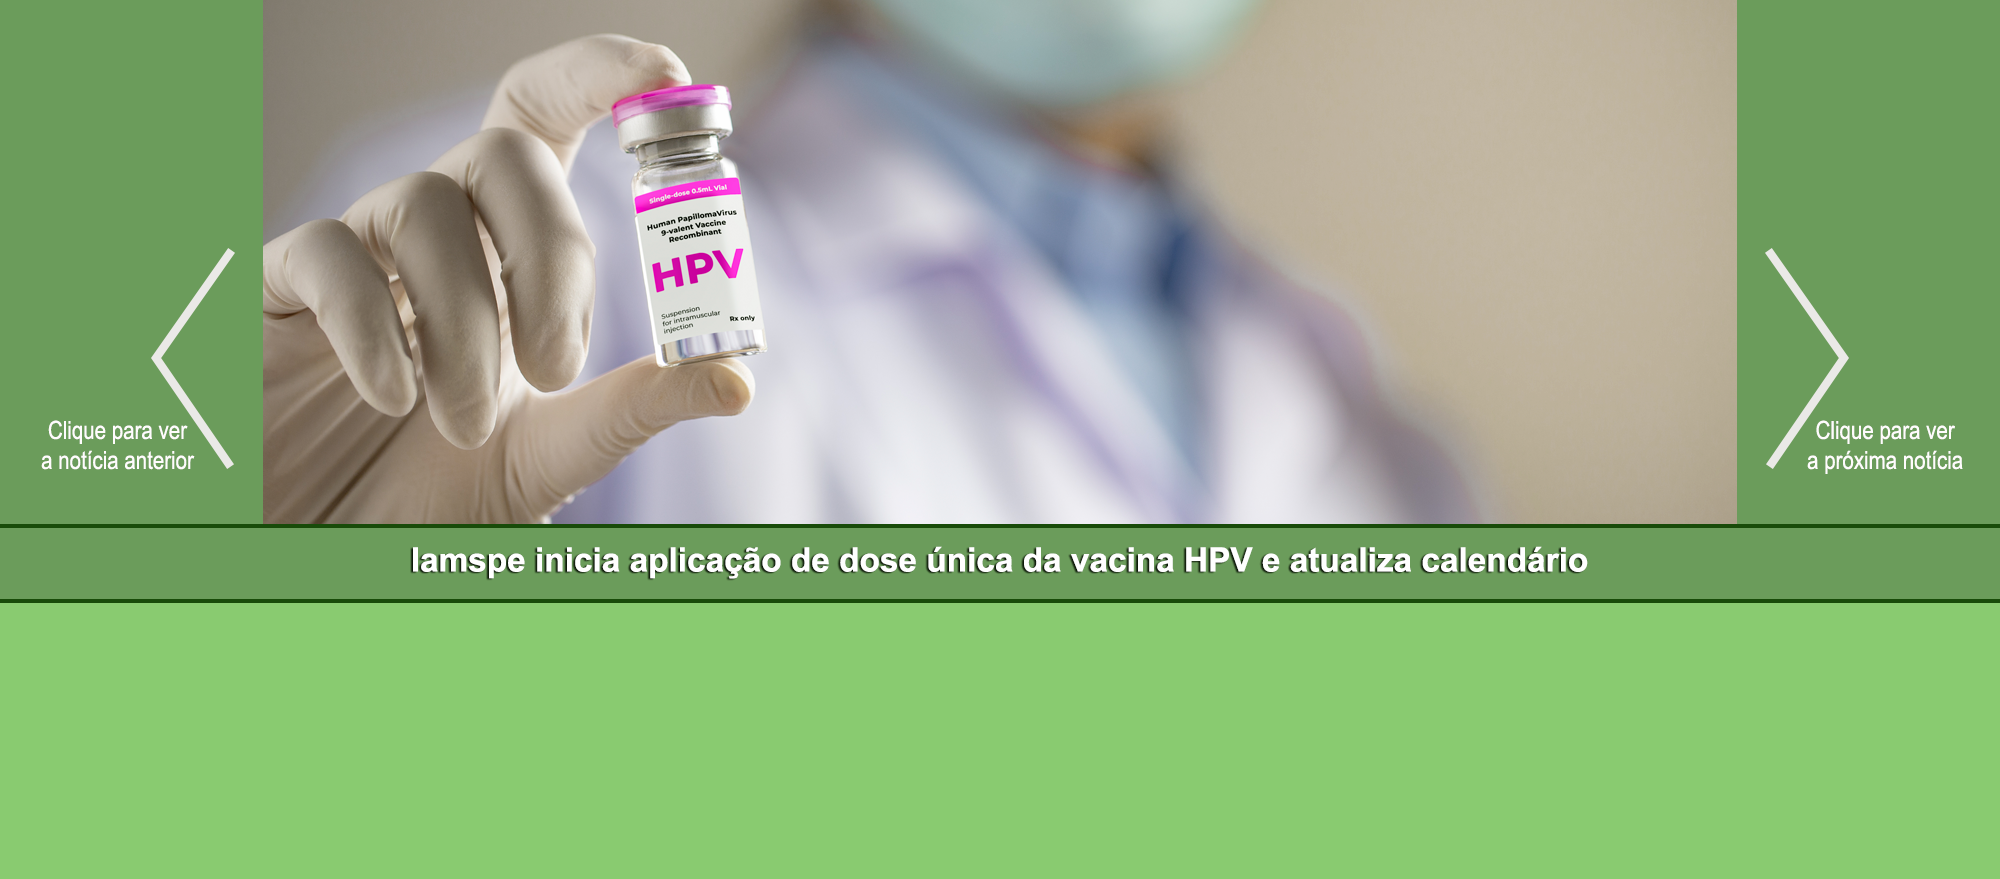 Slider – Iamspe inicia aplicação de dose única da vacina HPV e atualiza calendário